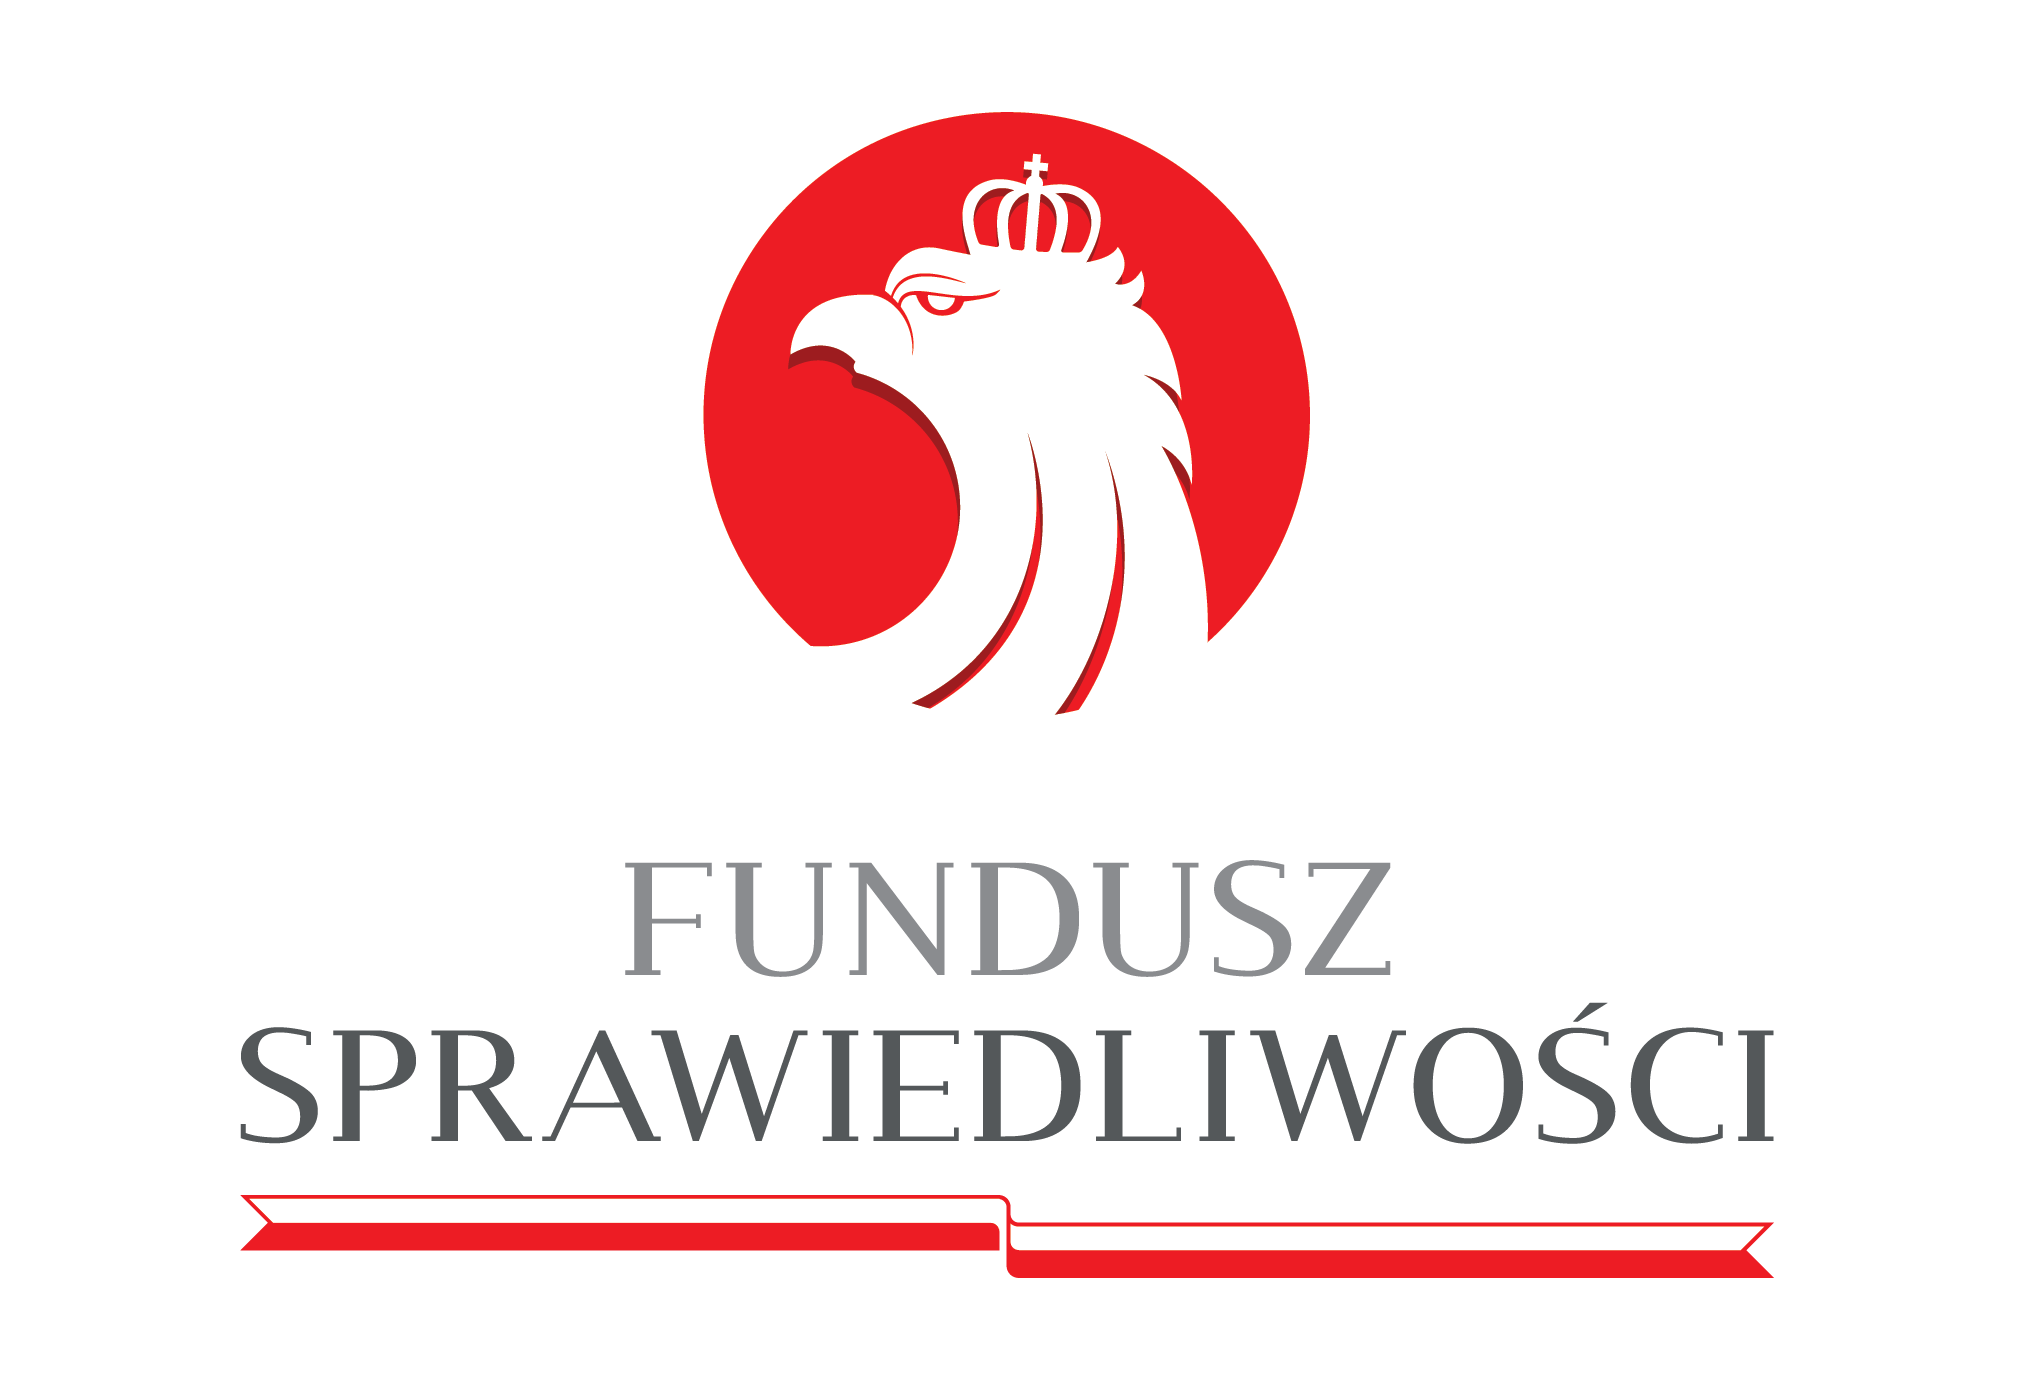 logo Fundusz sprawiedliwosci